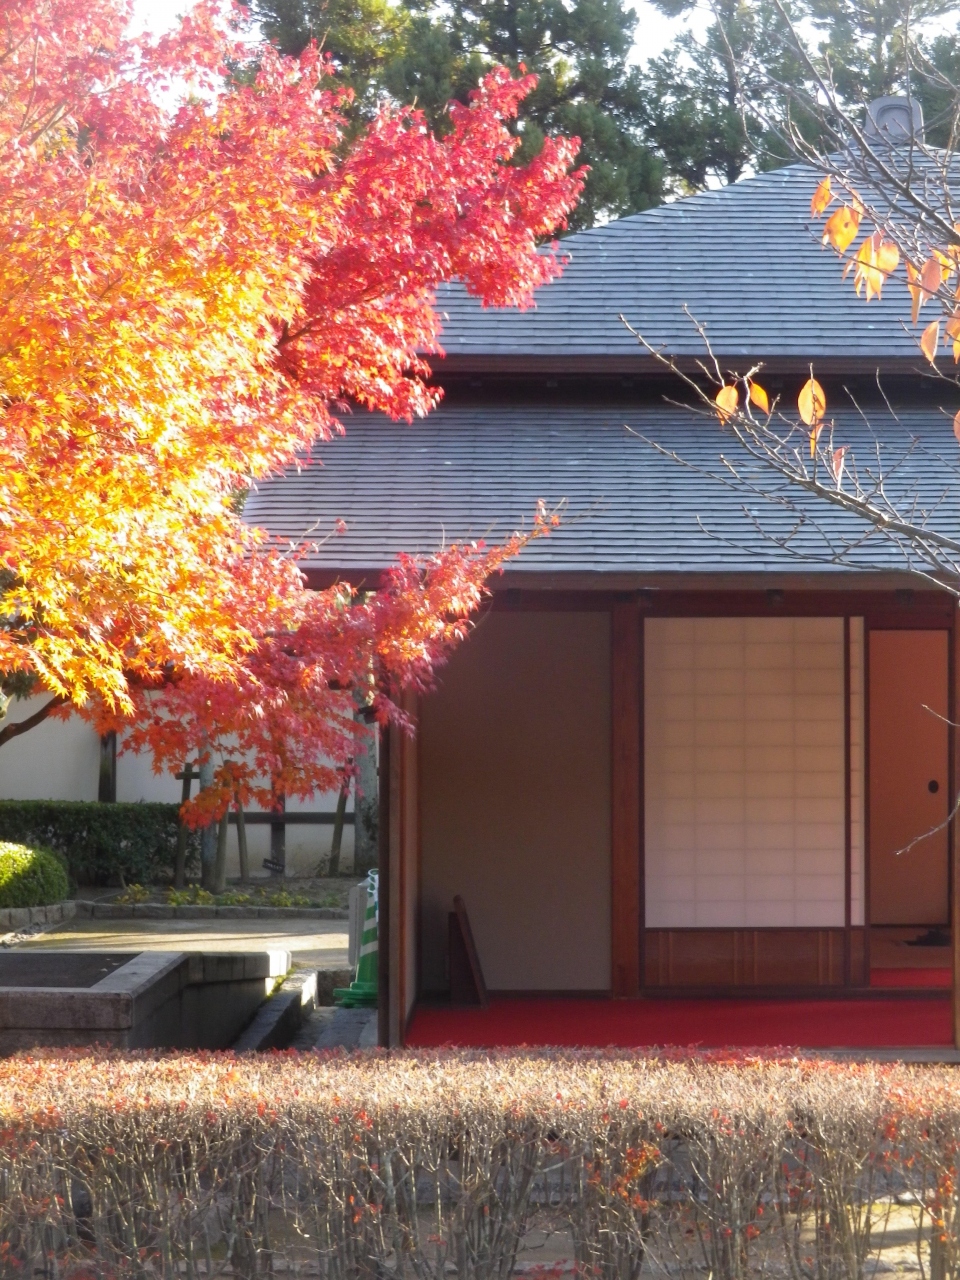 松山城二之丸史跡庭園で紅葉している庭園を歩きました 松山 愛媛県 の旅行記 ブログ By タビガラスさん フォートラベル